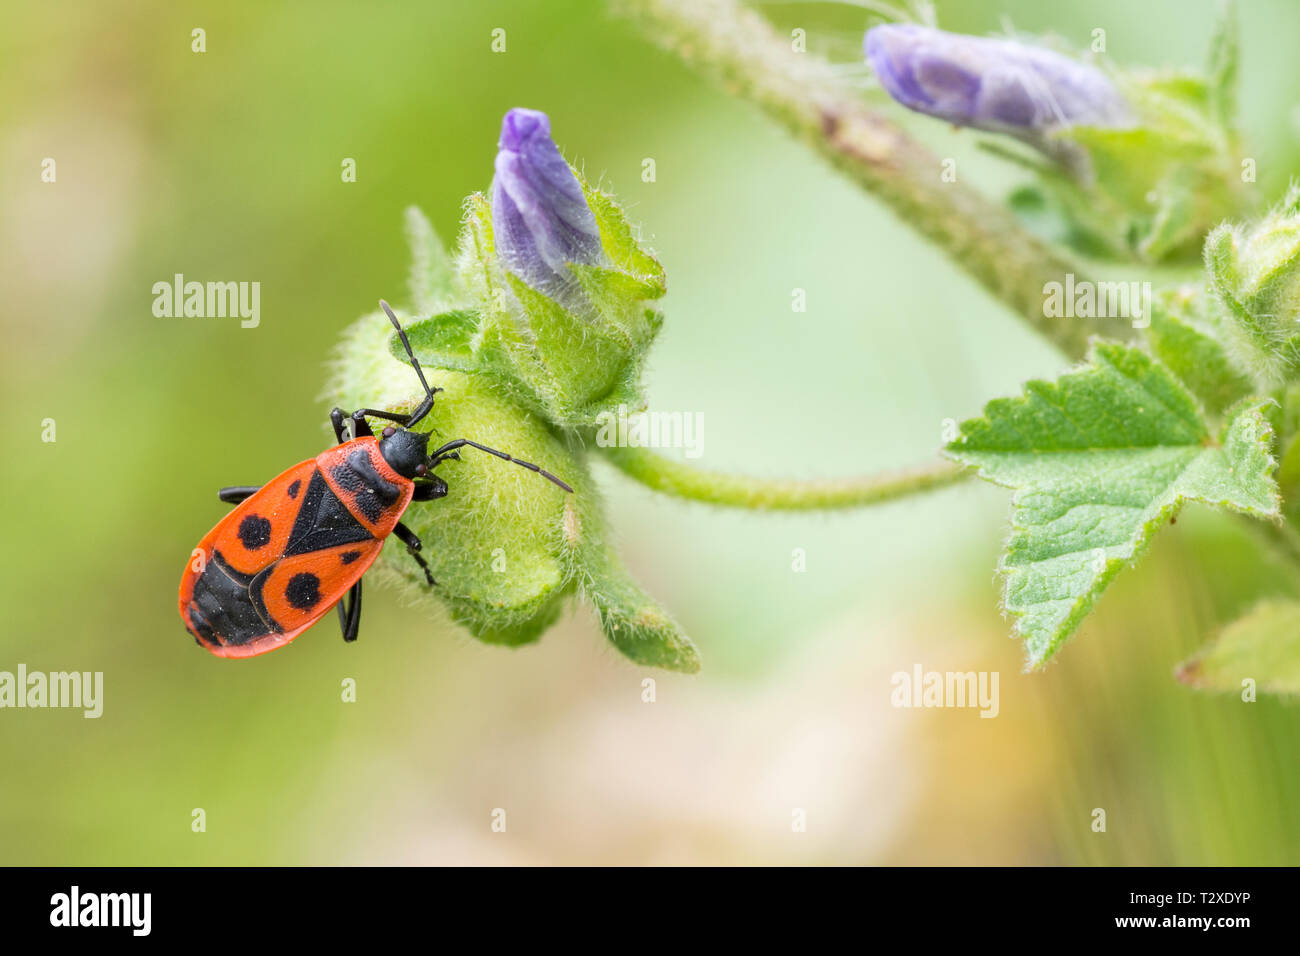 Firebug (Pyrrhocoris apterus) on wildflower Stock Photo